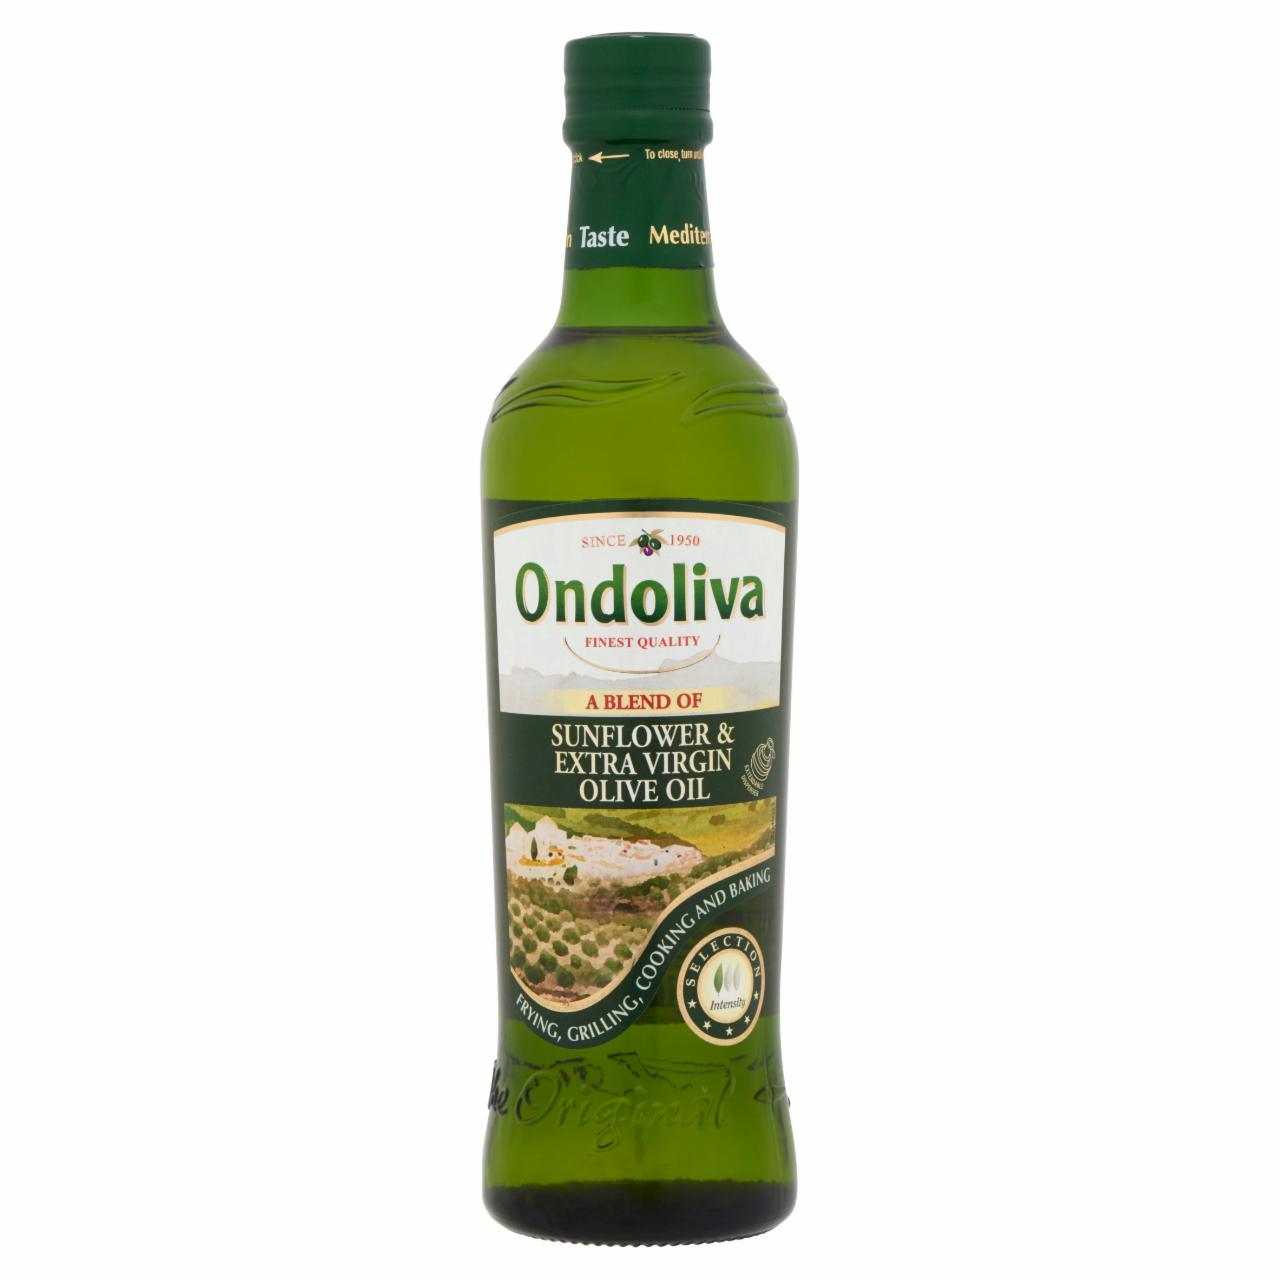 Képek - Ondoliva finomított napraforgó olaj és extraszűz olívaolaj keveréke 500 ml